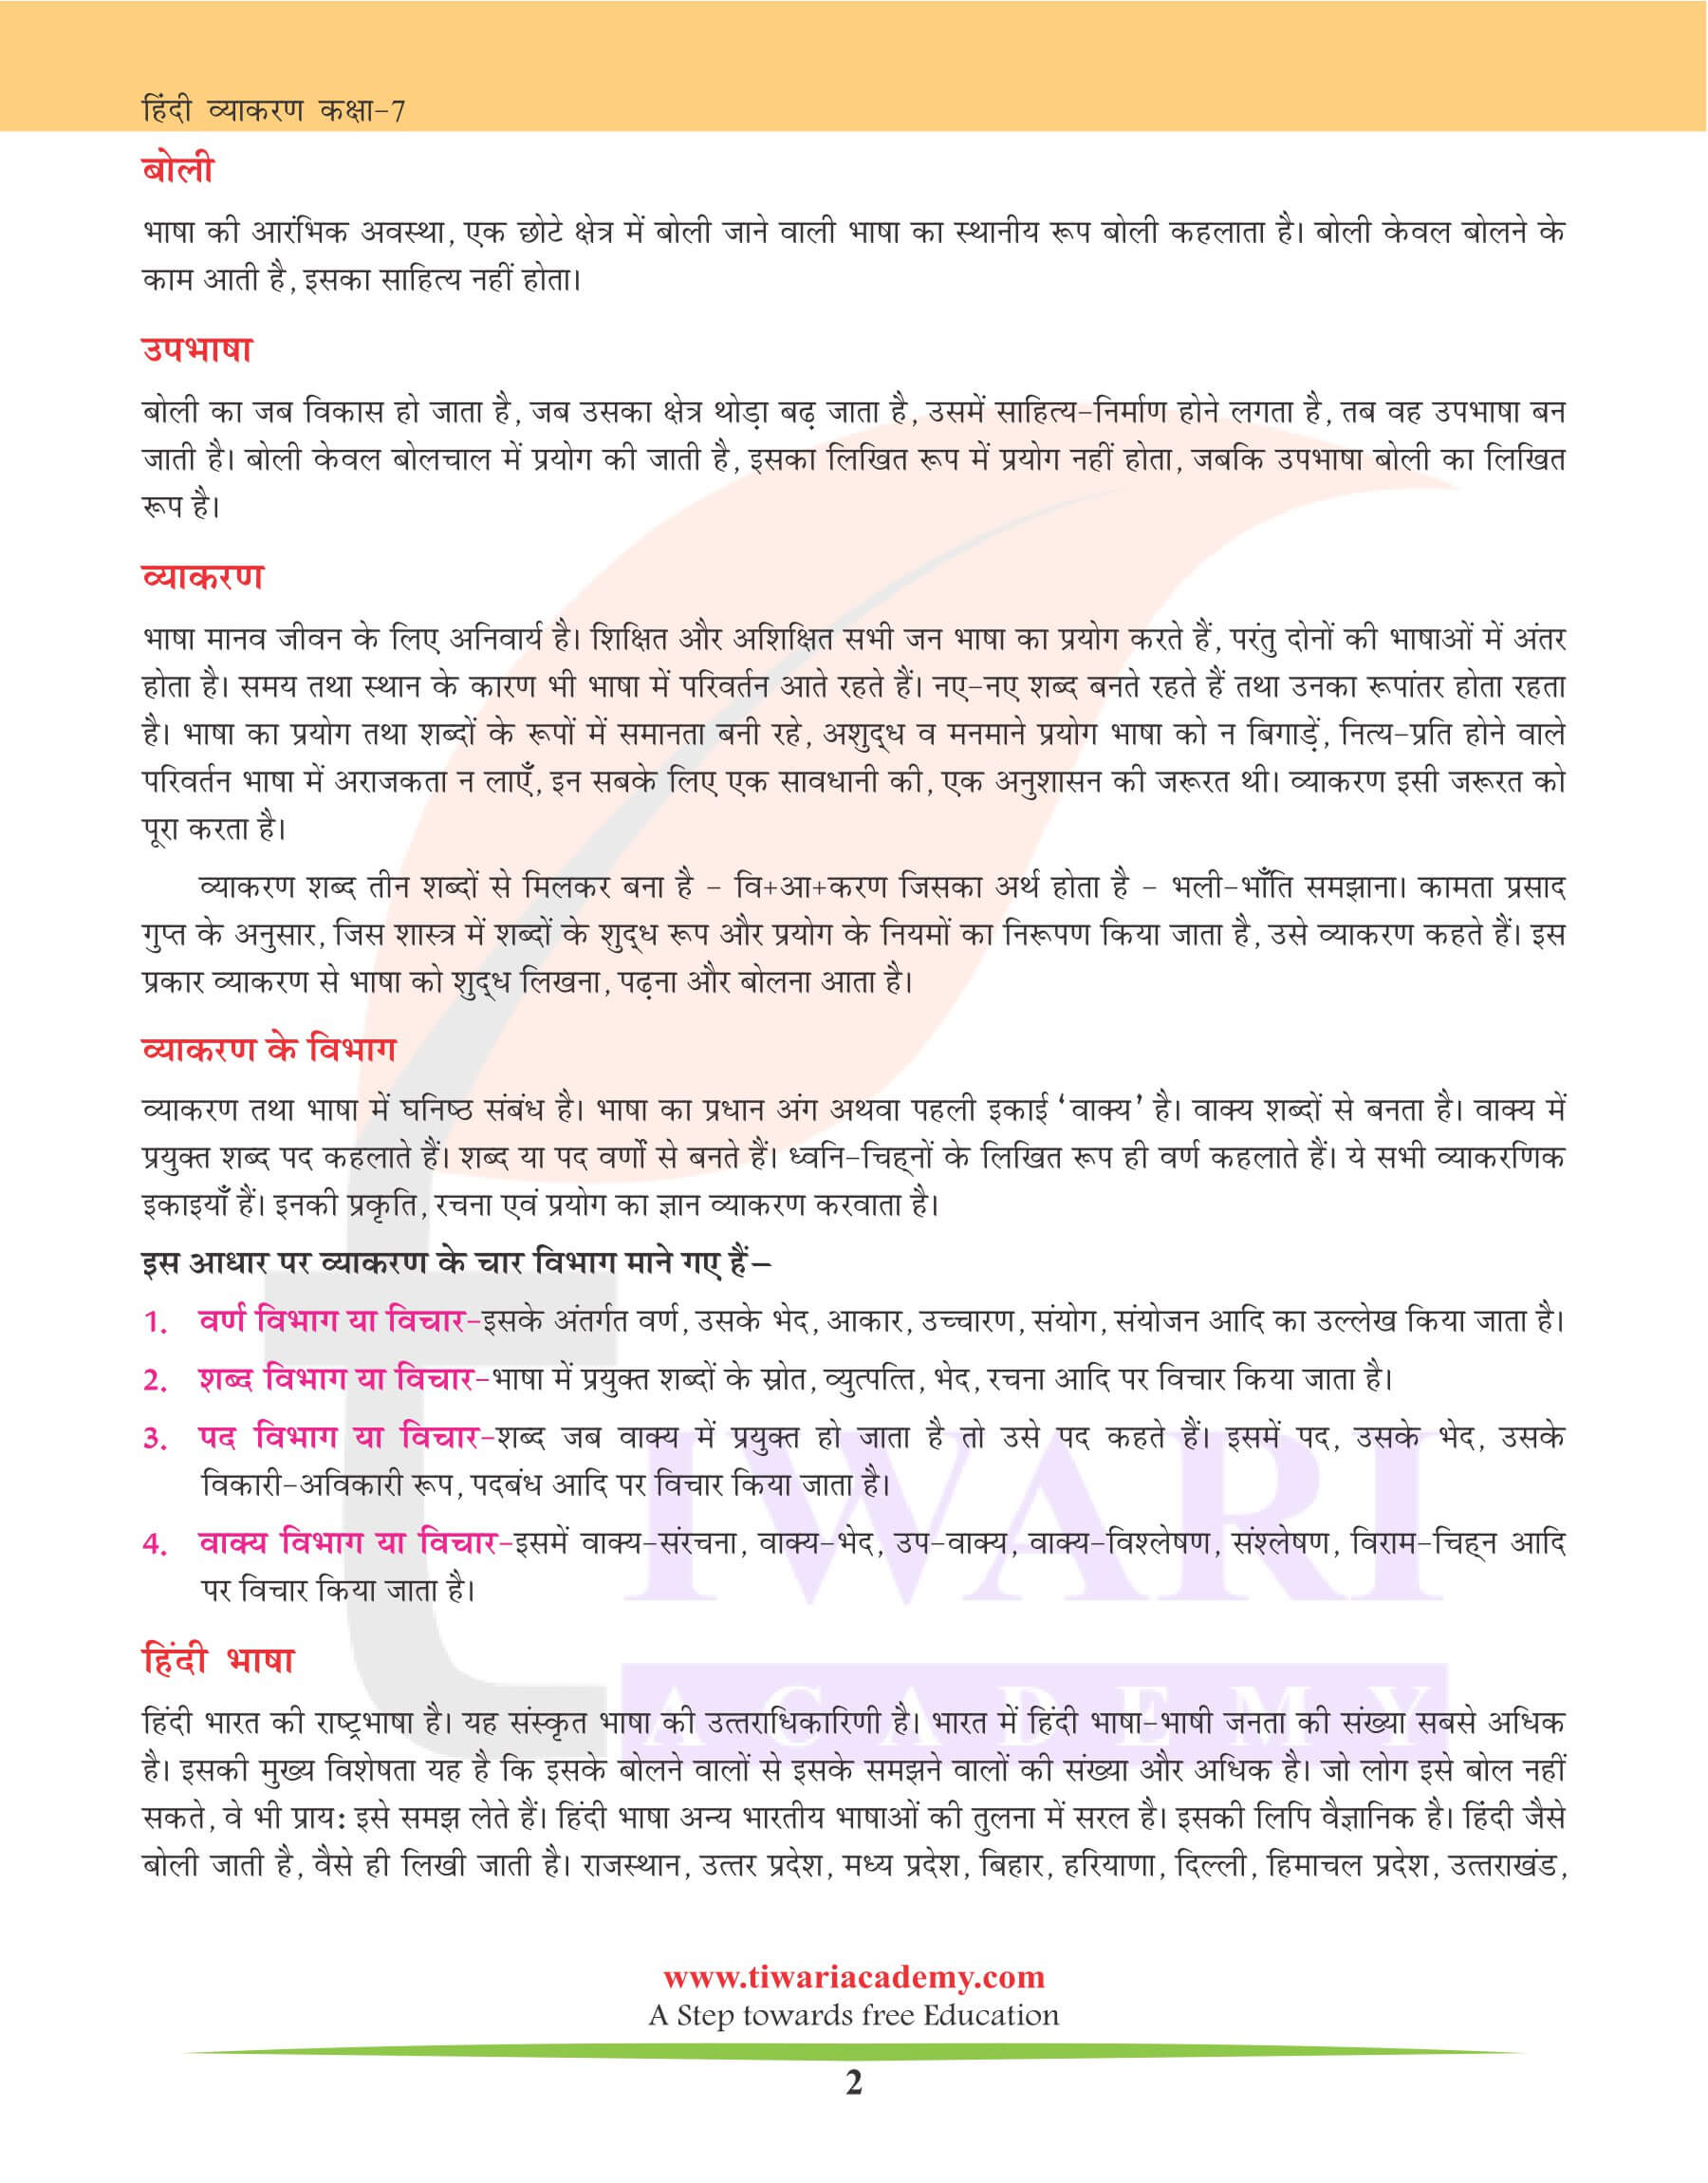 कक्षा 7 हिंदी व्याकरण अध्याय 1 भाषा